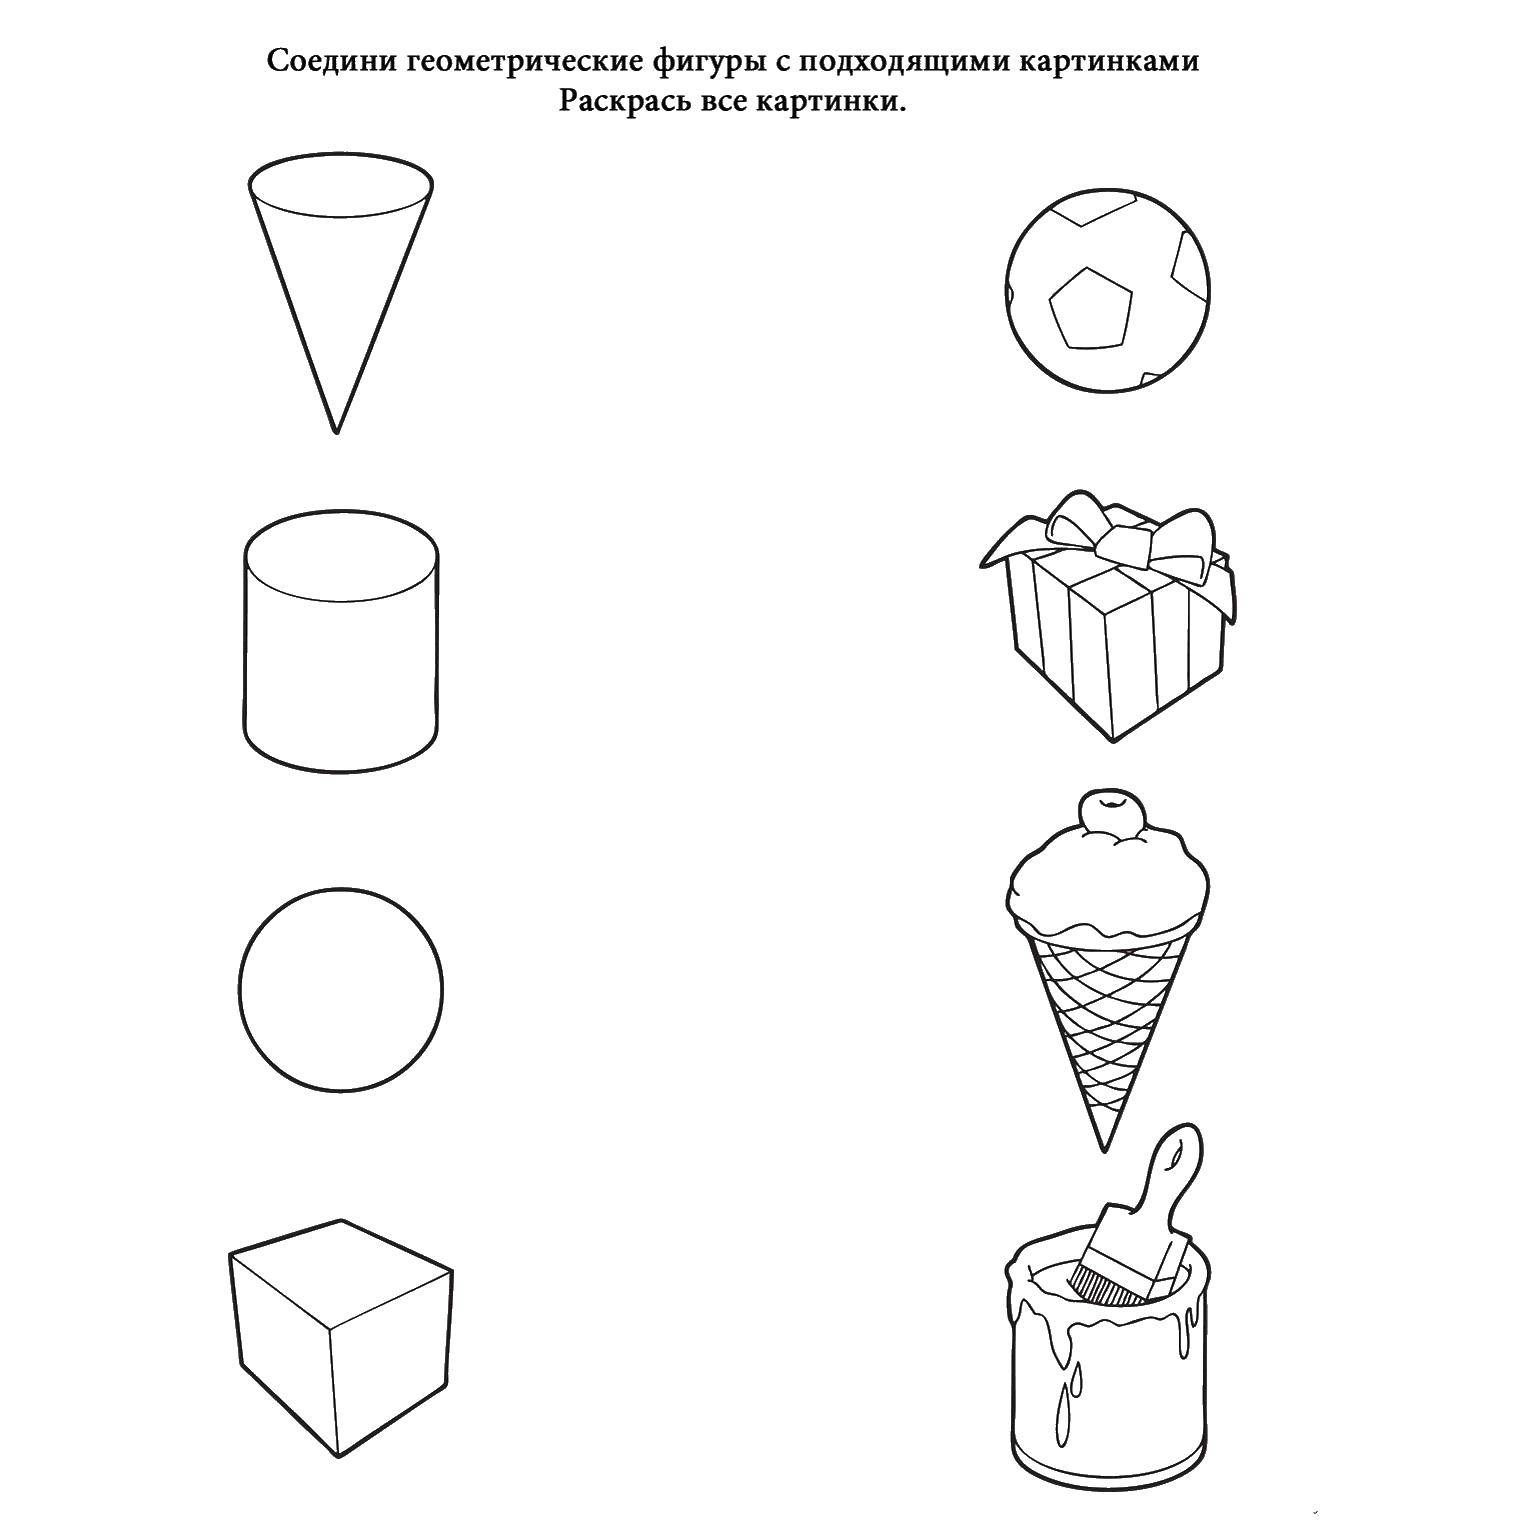 Соотносить форму предметов с геометрической формой